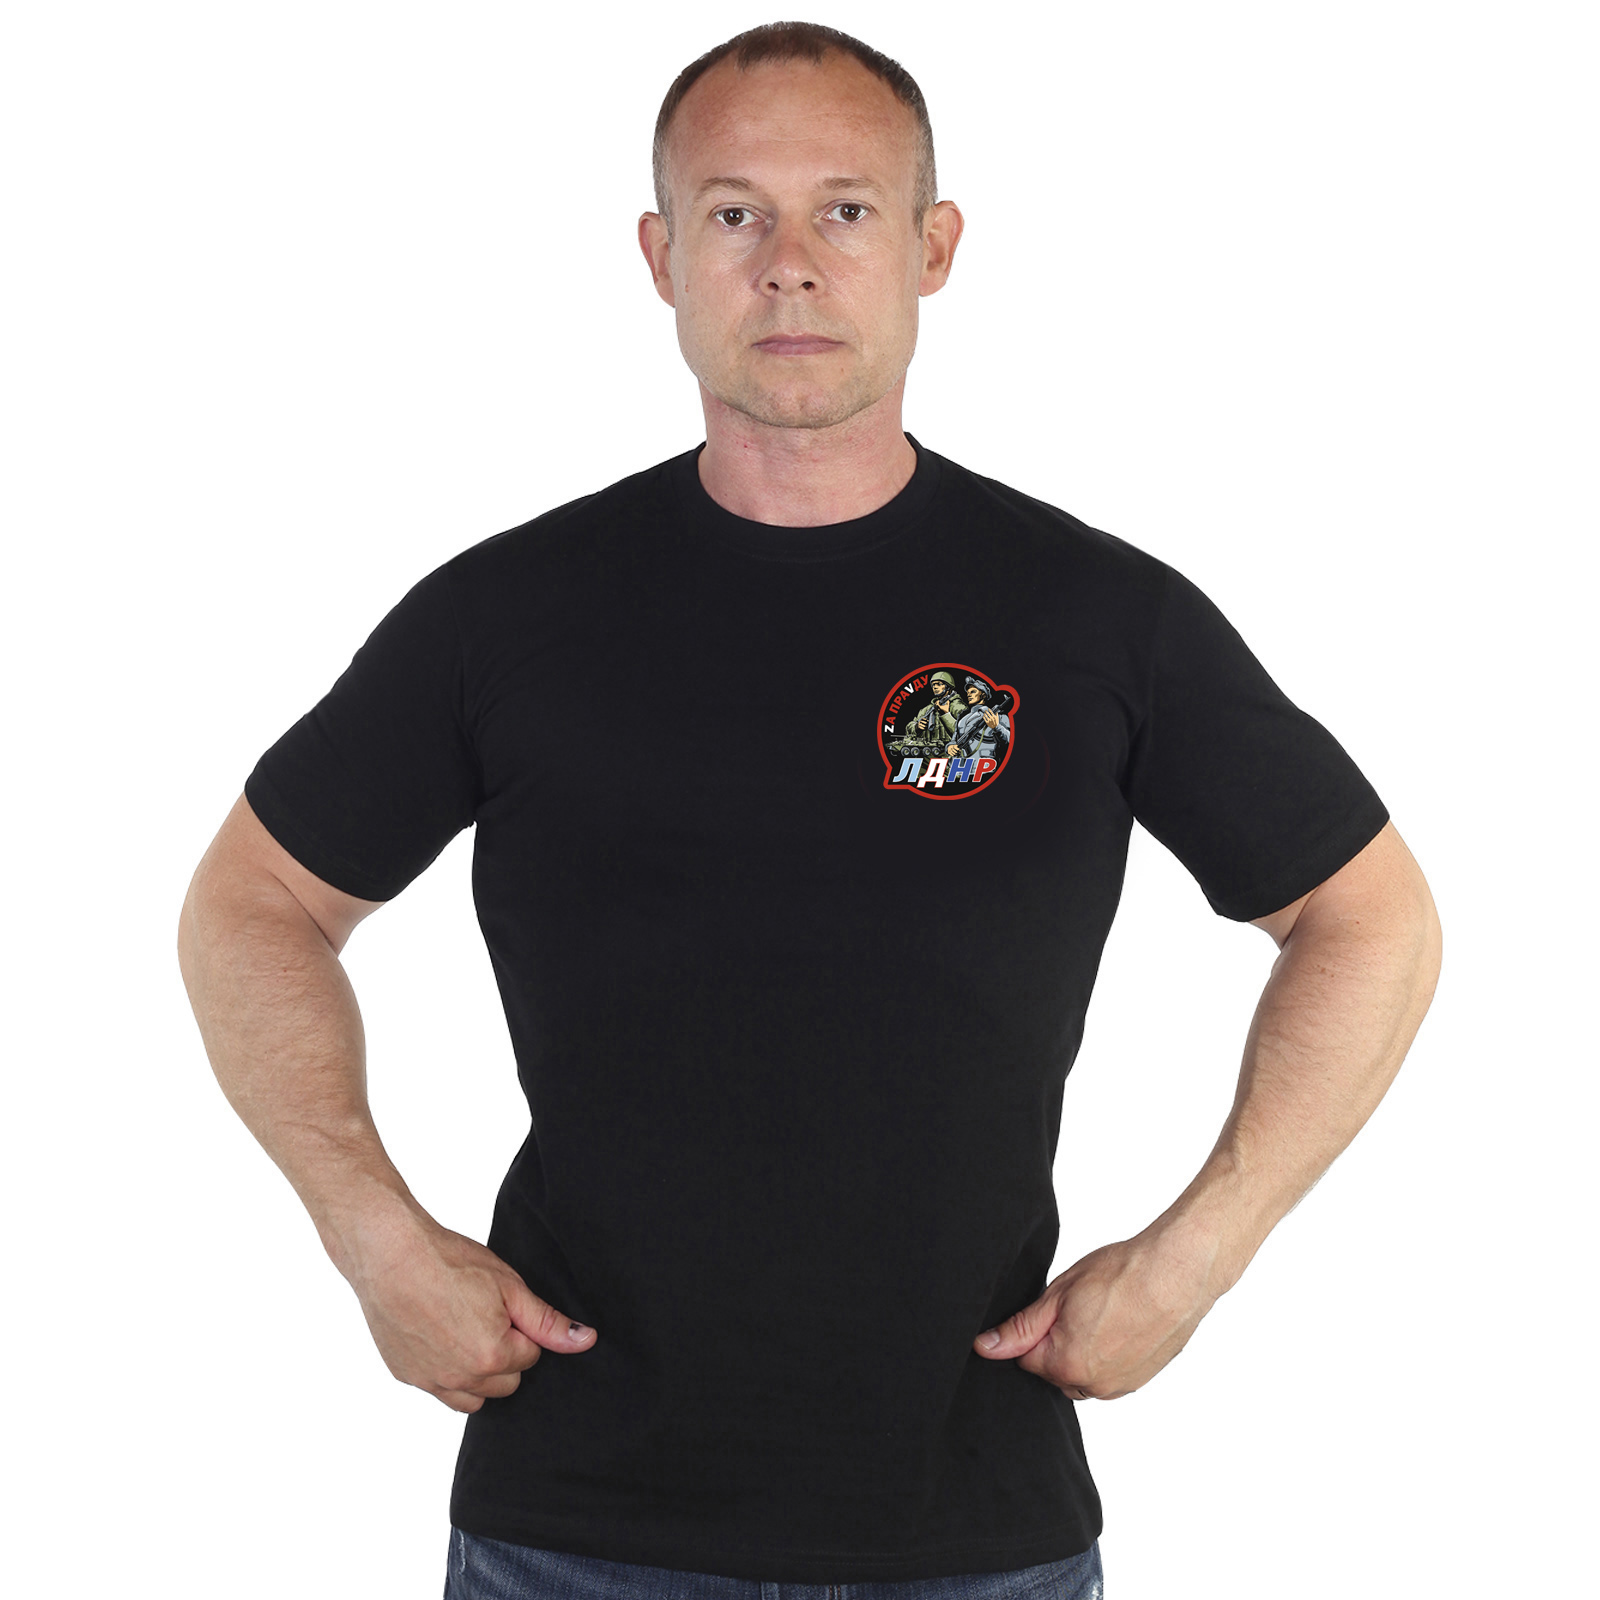 Чёрная футболка с термотрансфером ЛДНР "Zа праVду"